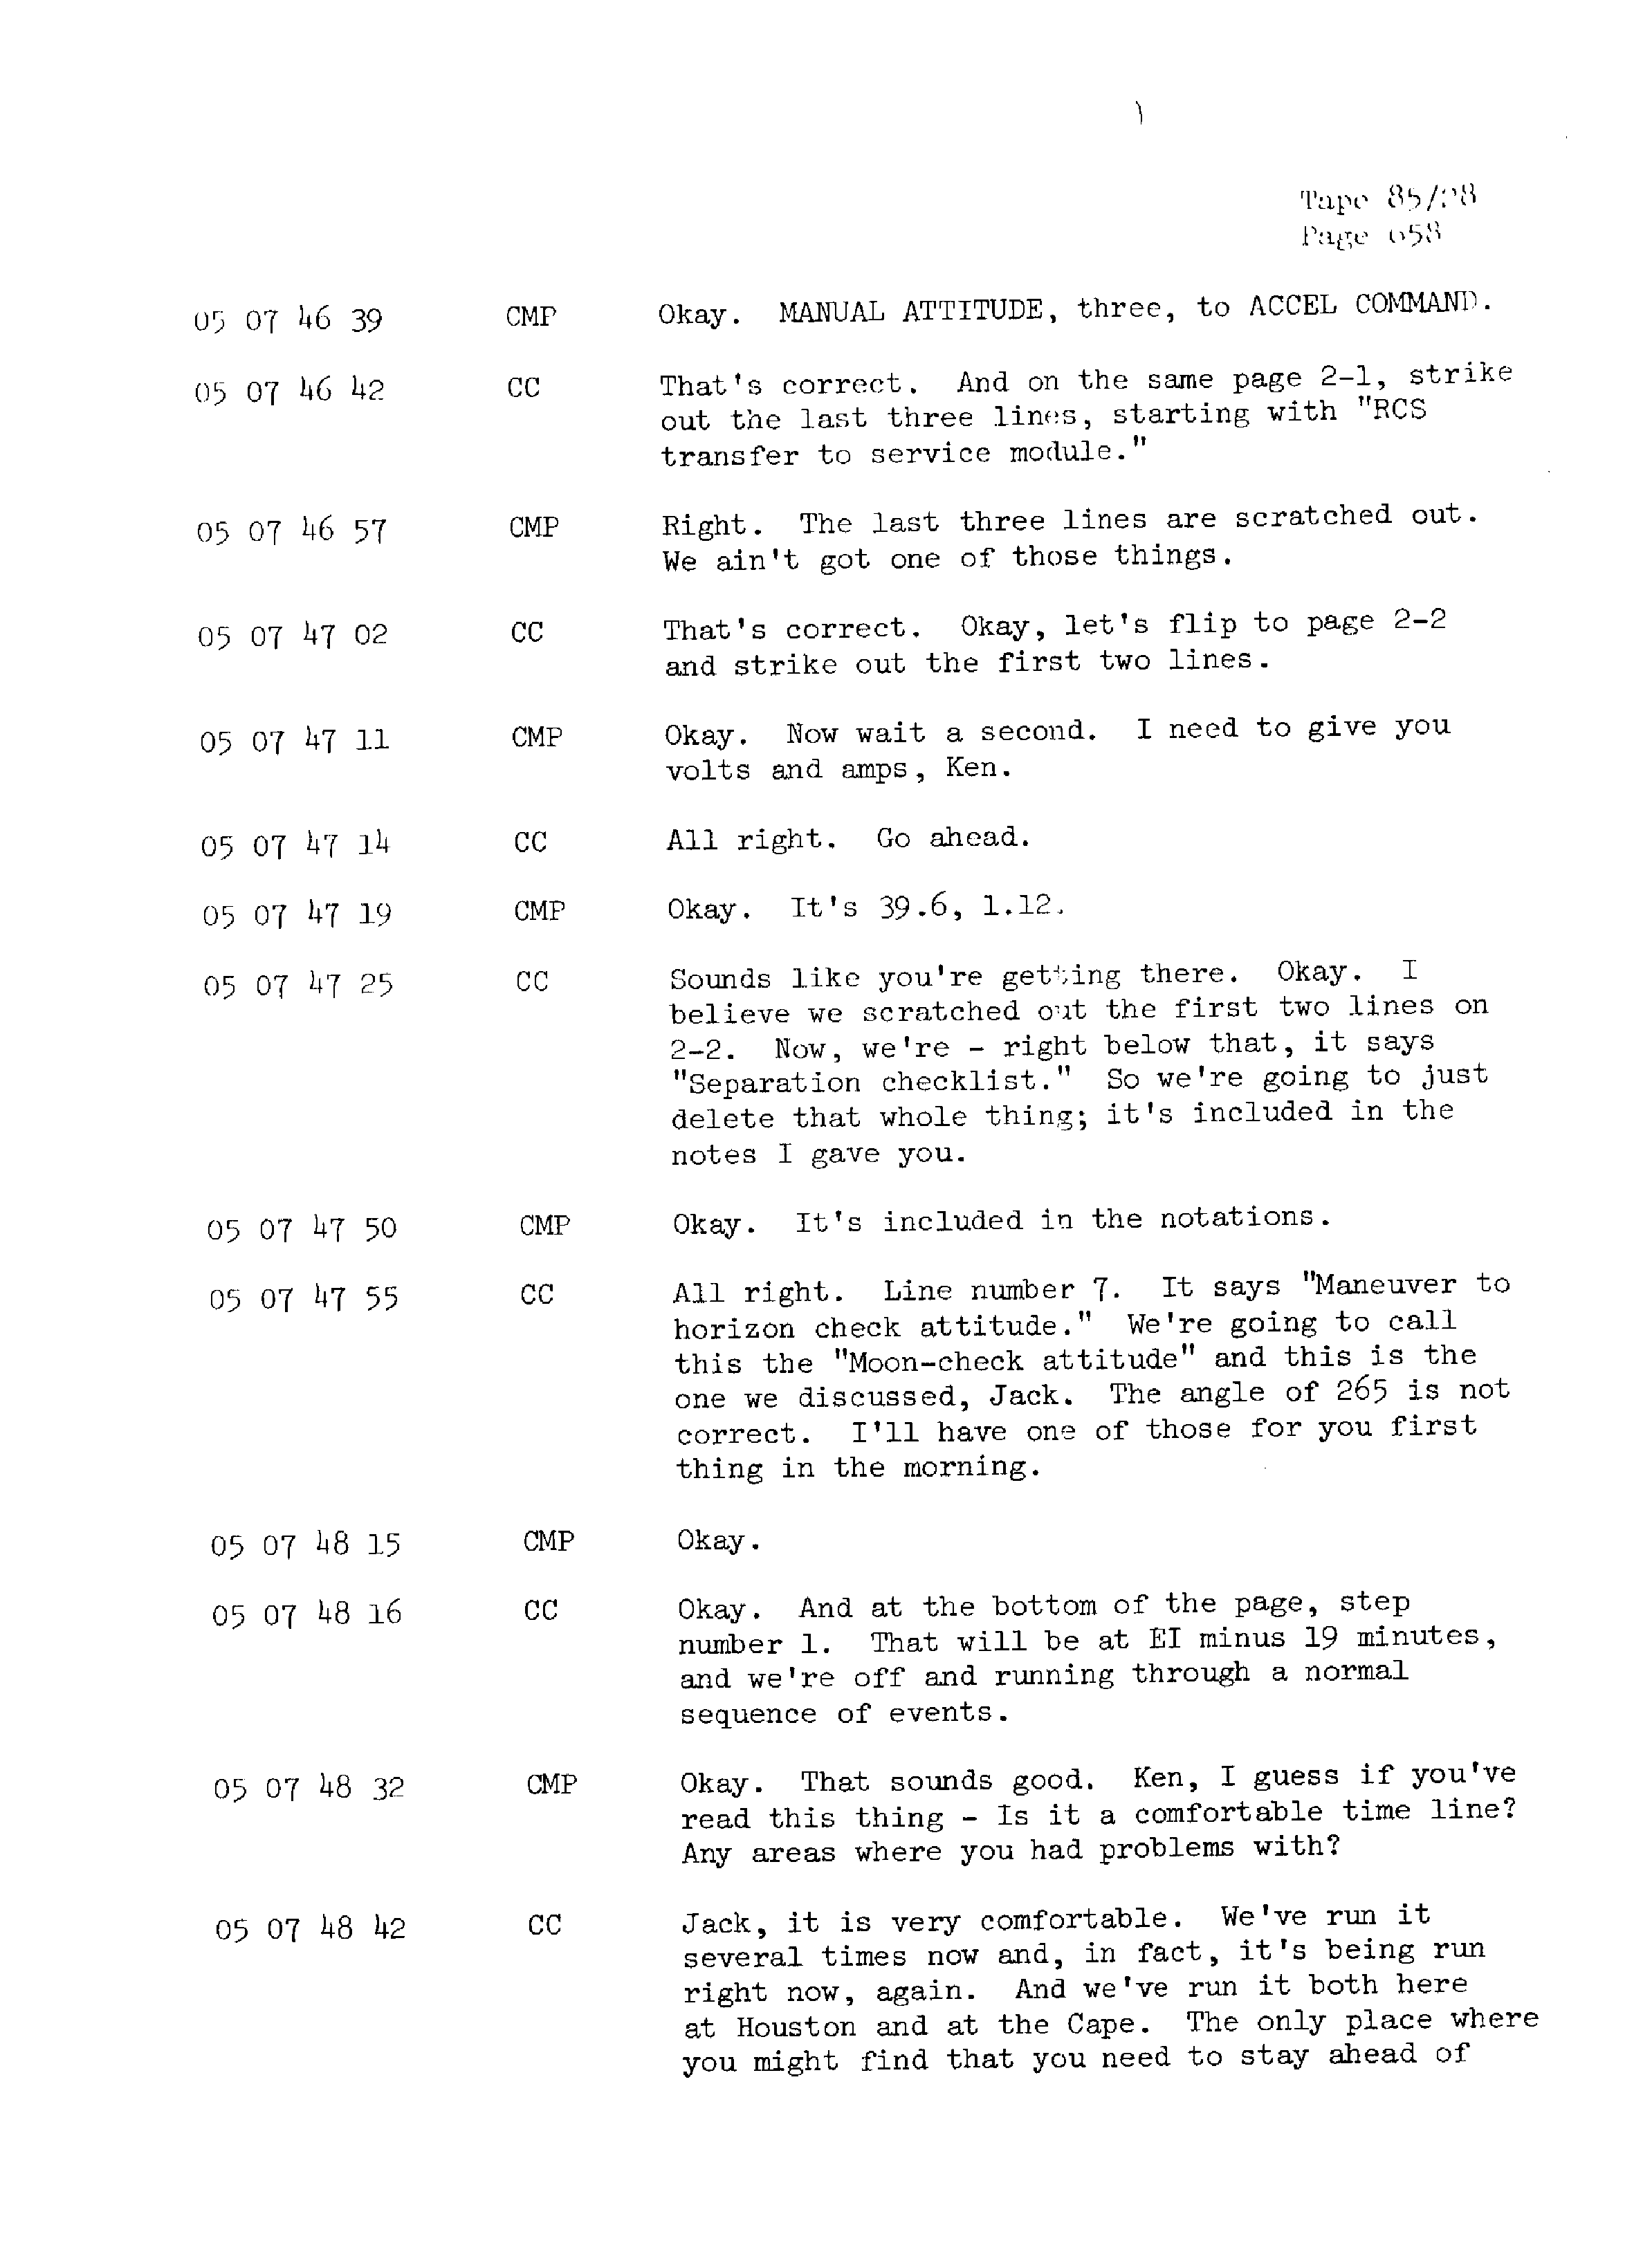 Page 665 of Apollo 13’s original transcript